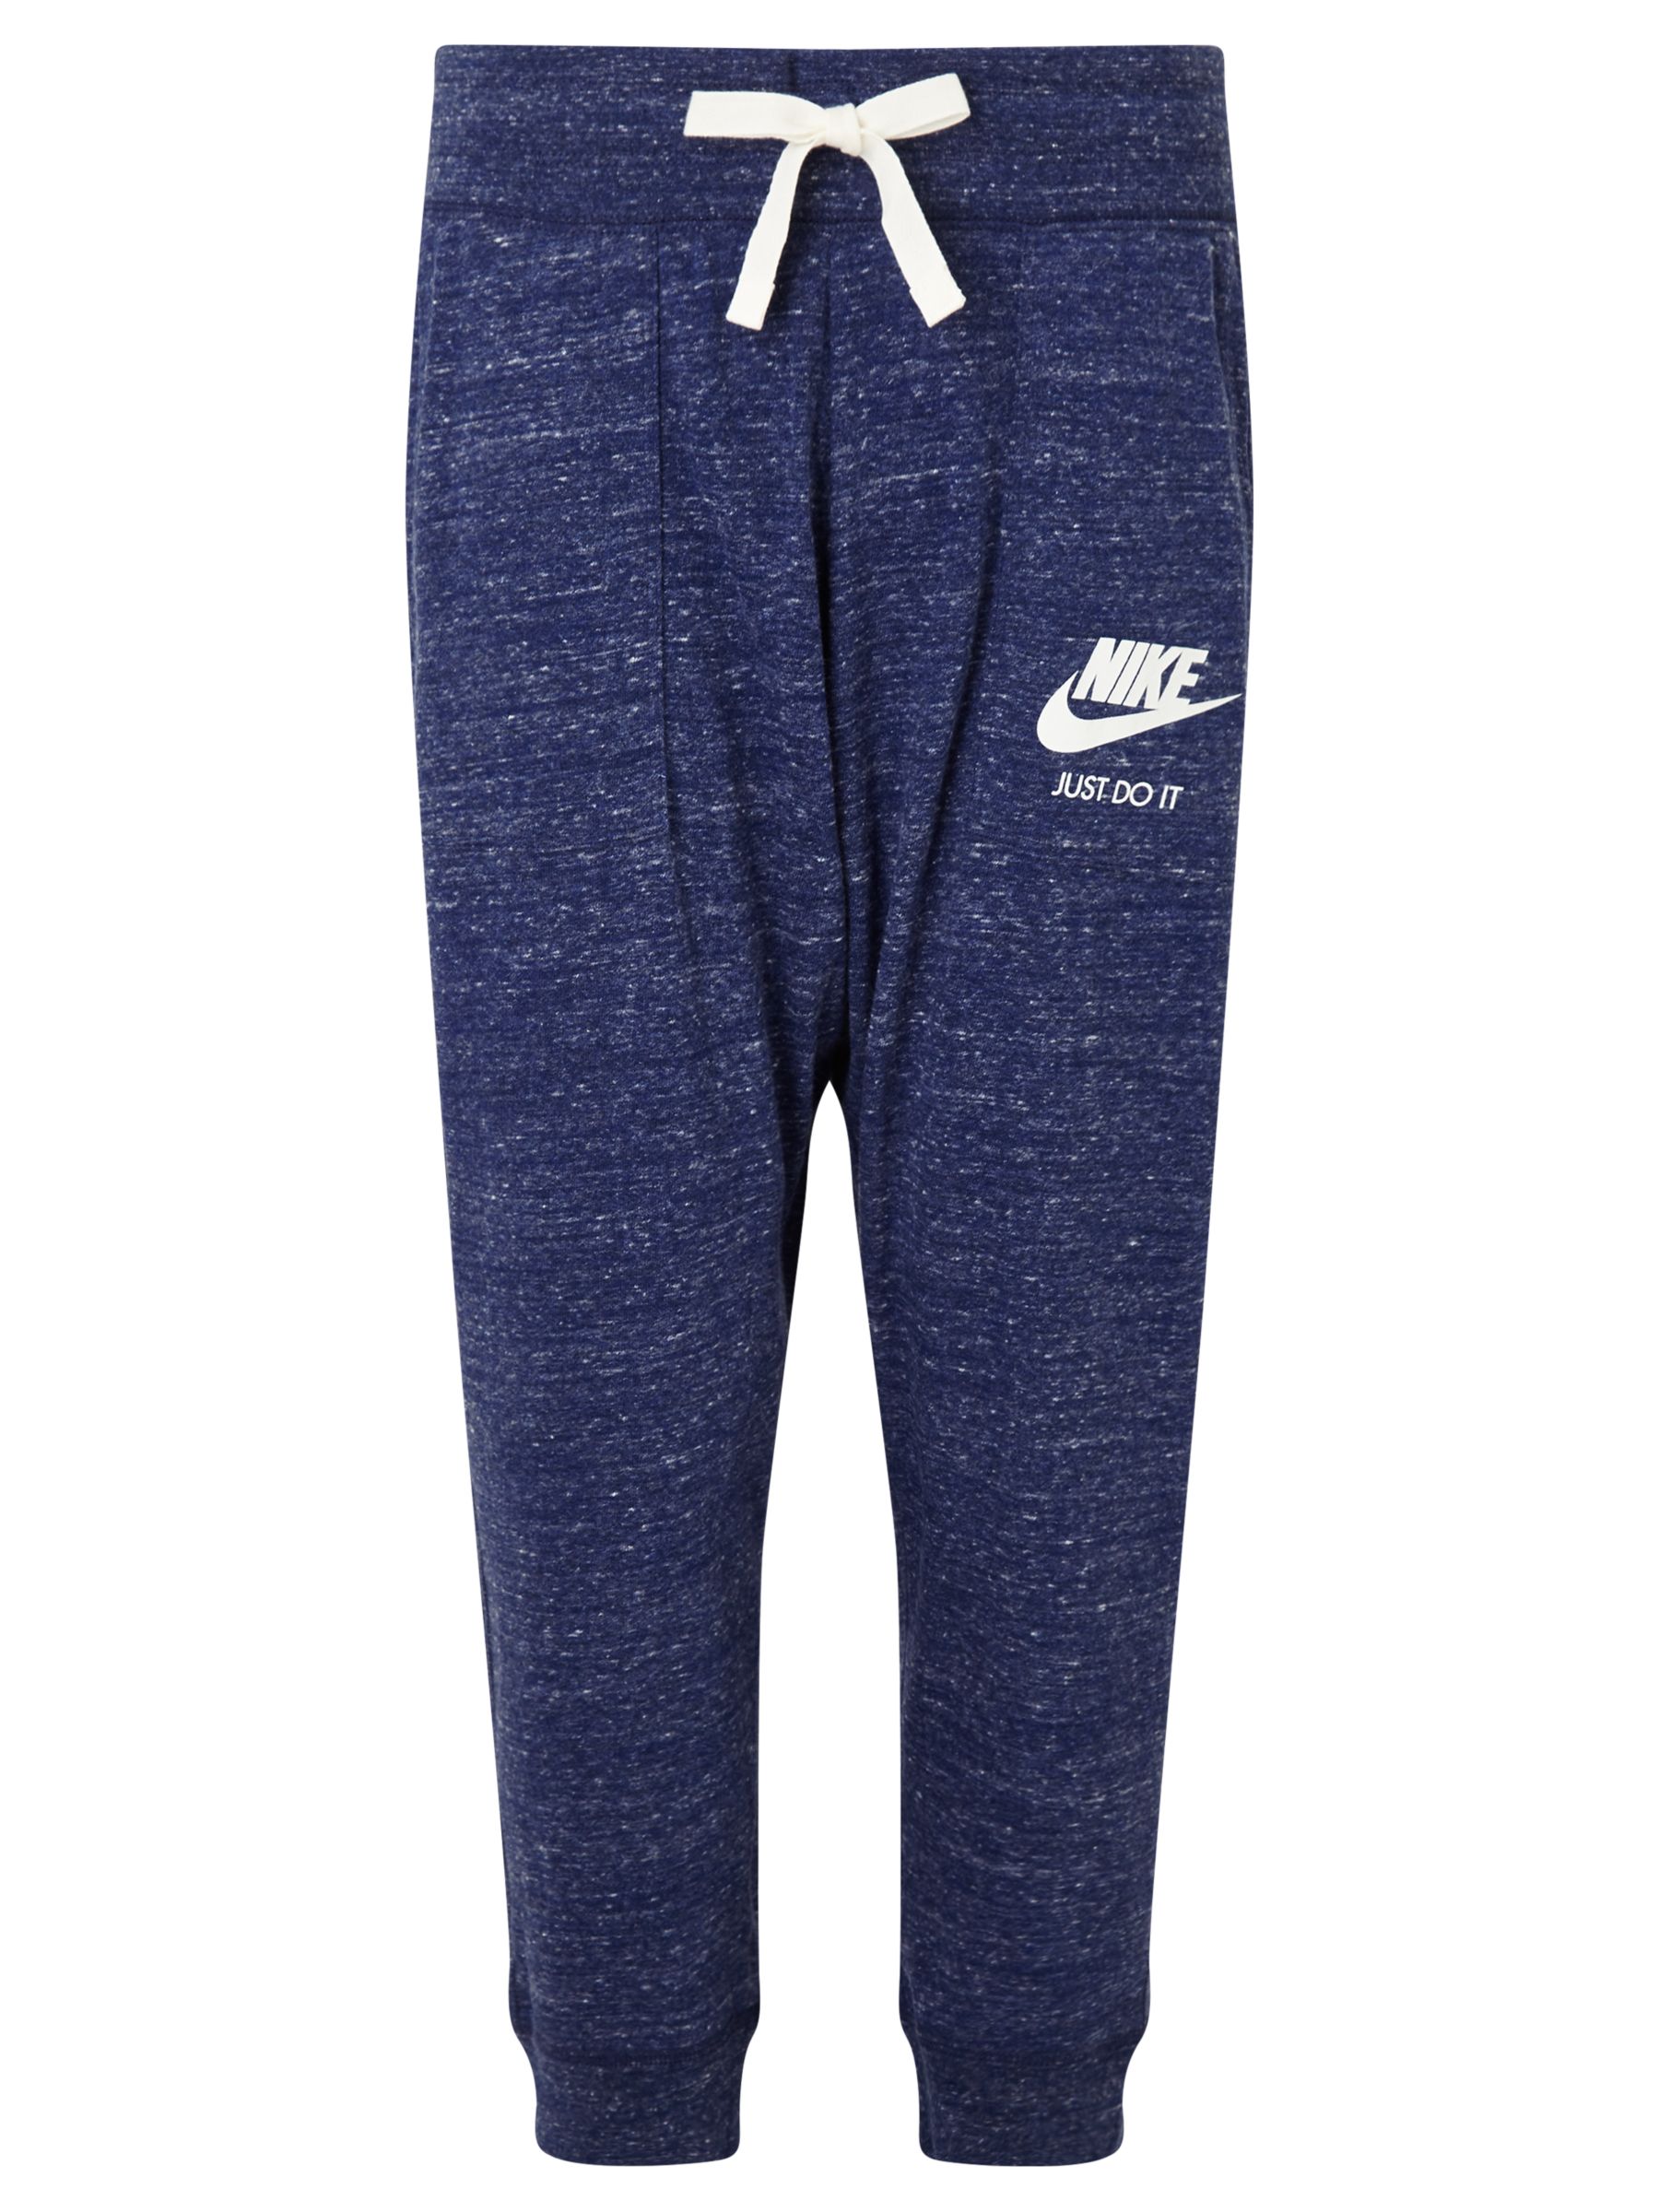 Nike Cotton Capri Pants, Blue at John Lewis & Partners